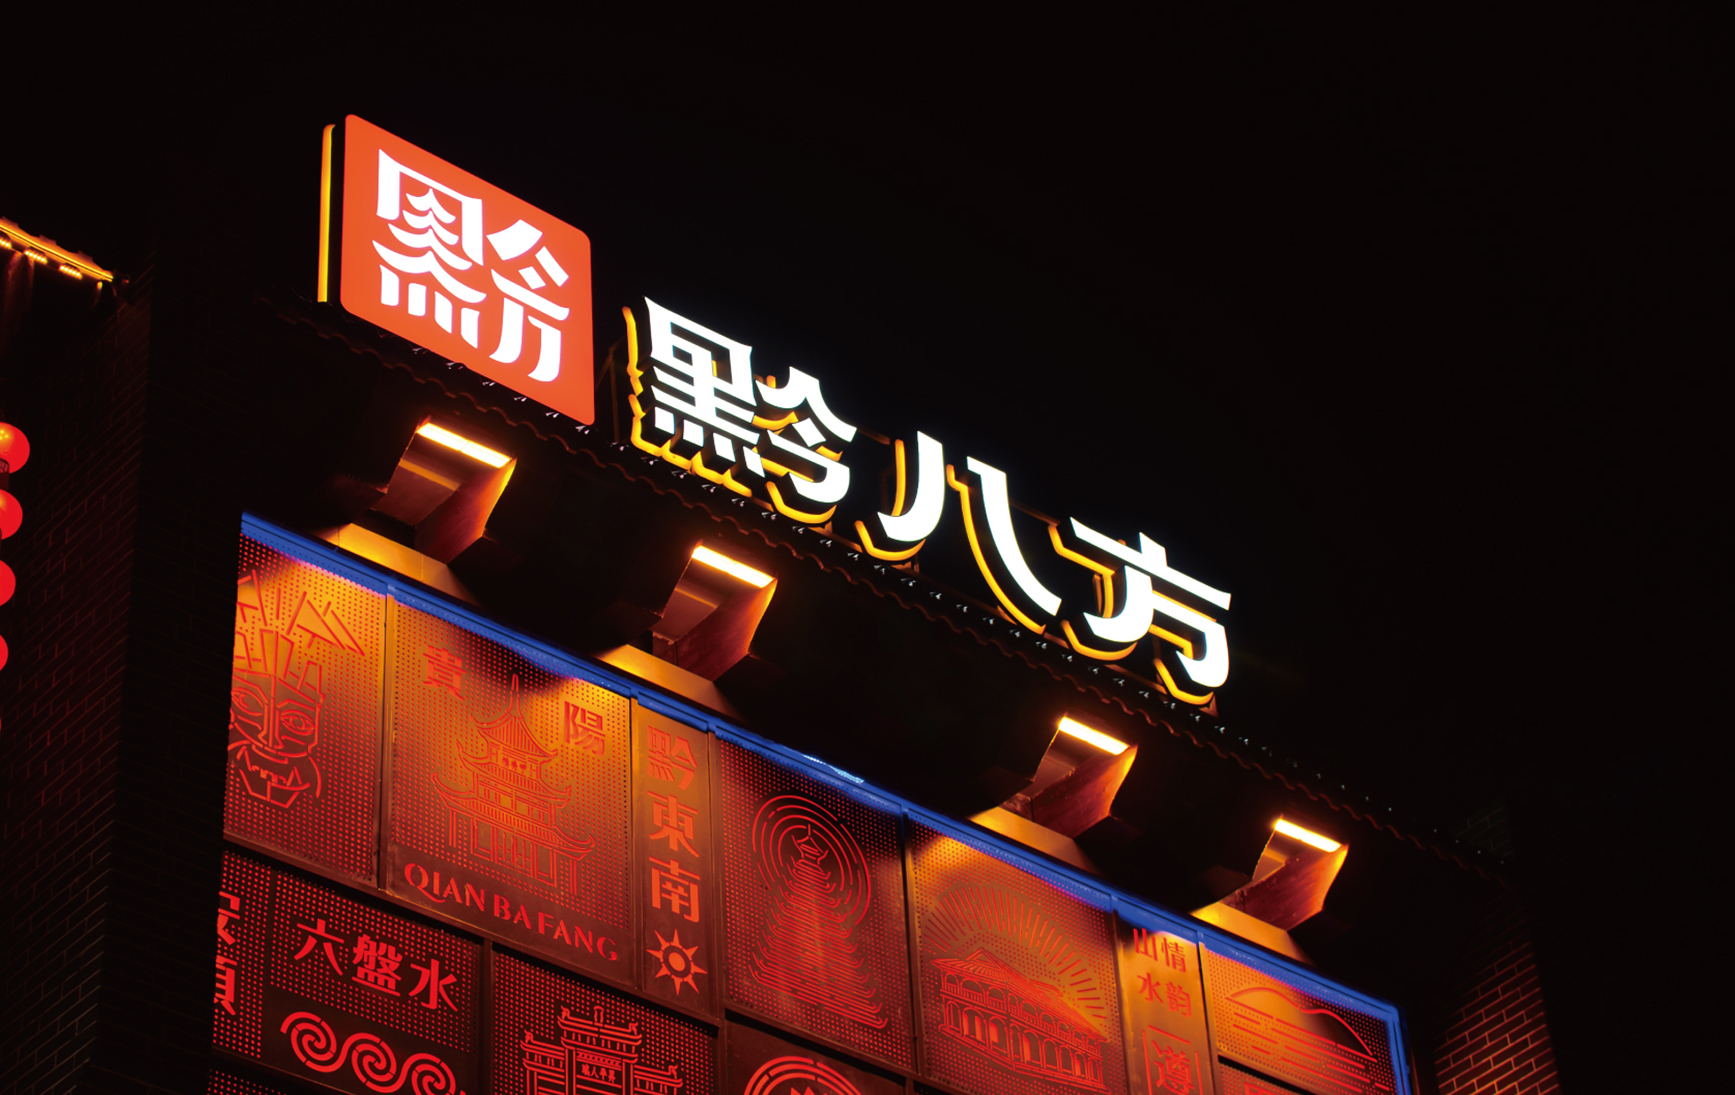 上行设计/ 贵州黔八方餐饮品牌设计